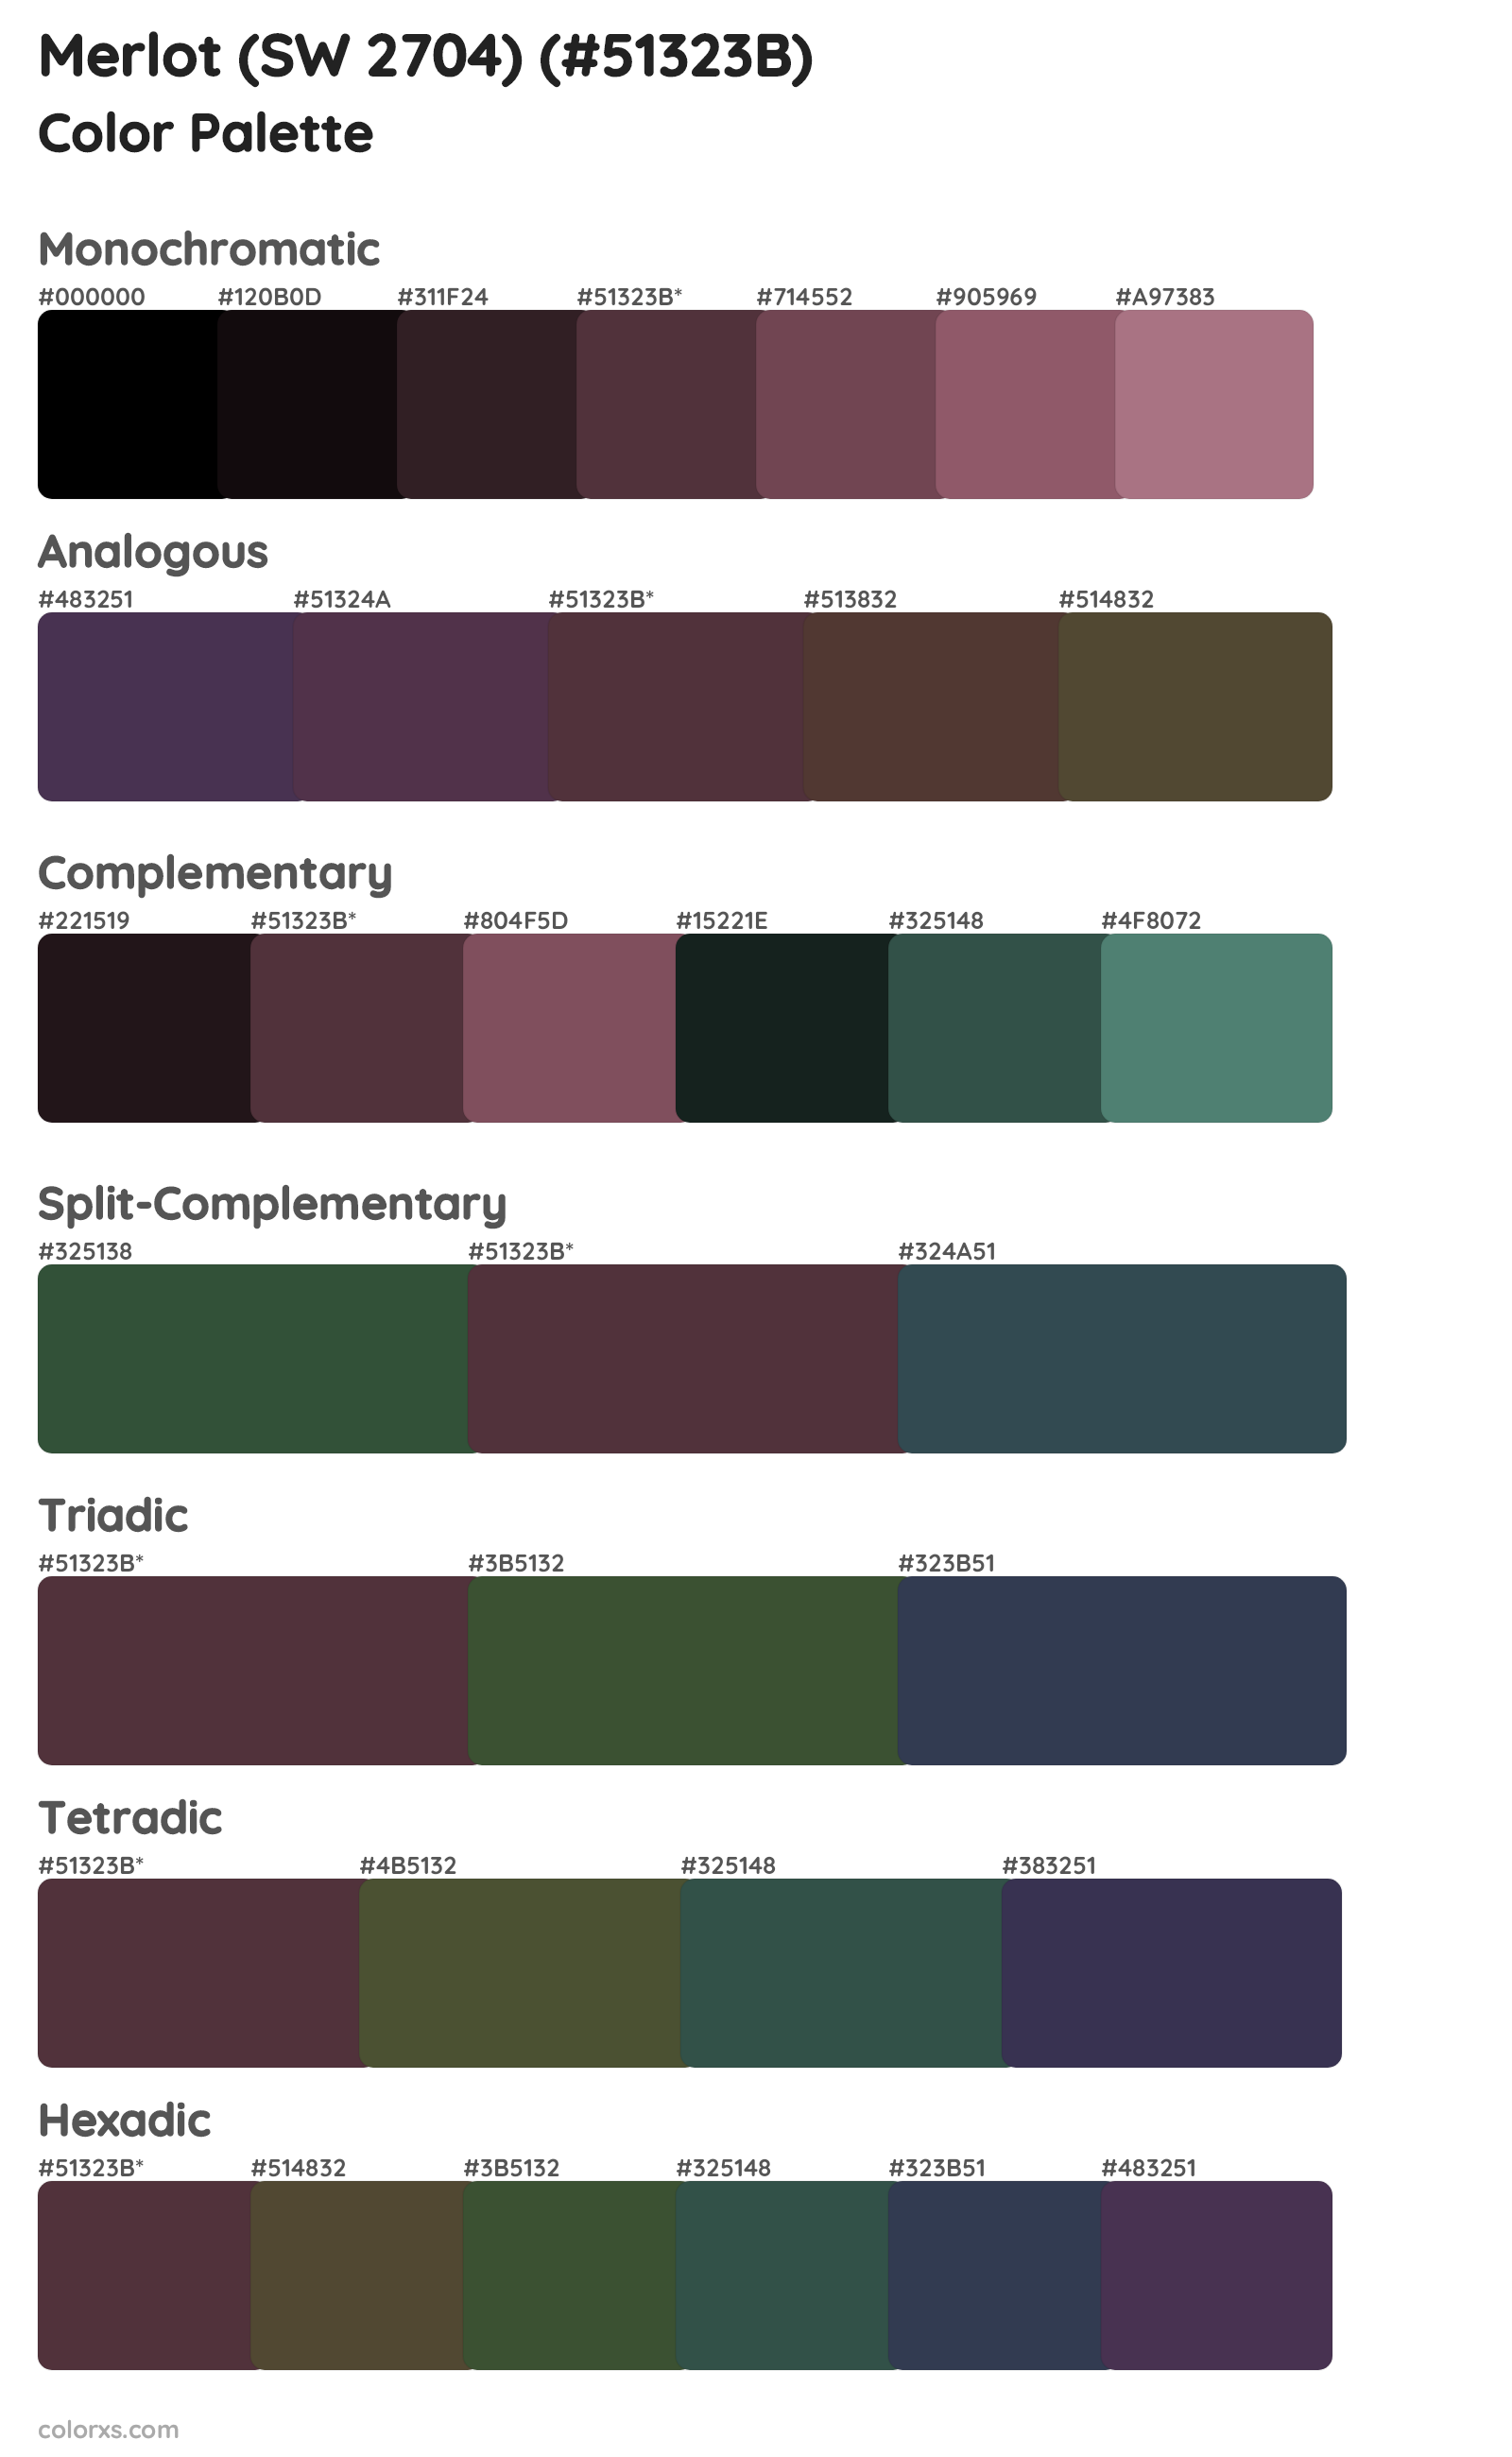 Merlot (SW 2704) Color Scheme Palettes